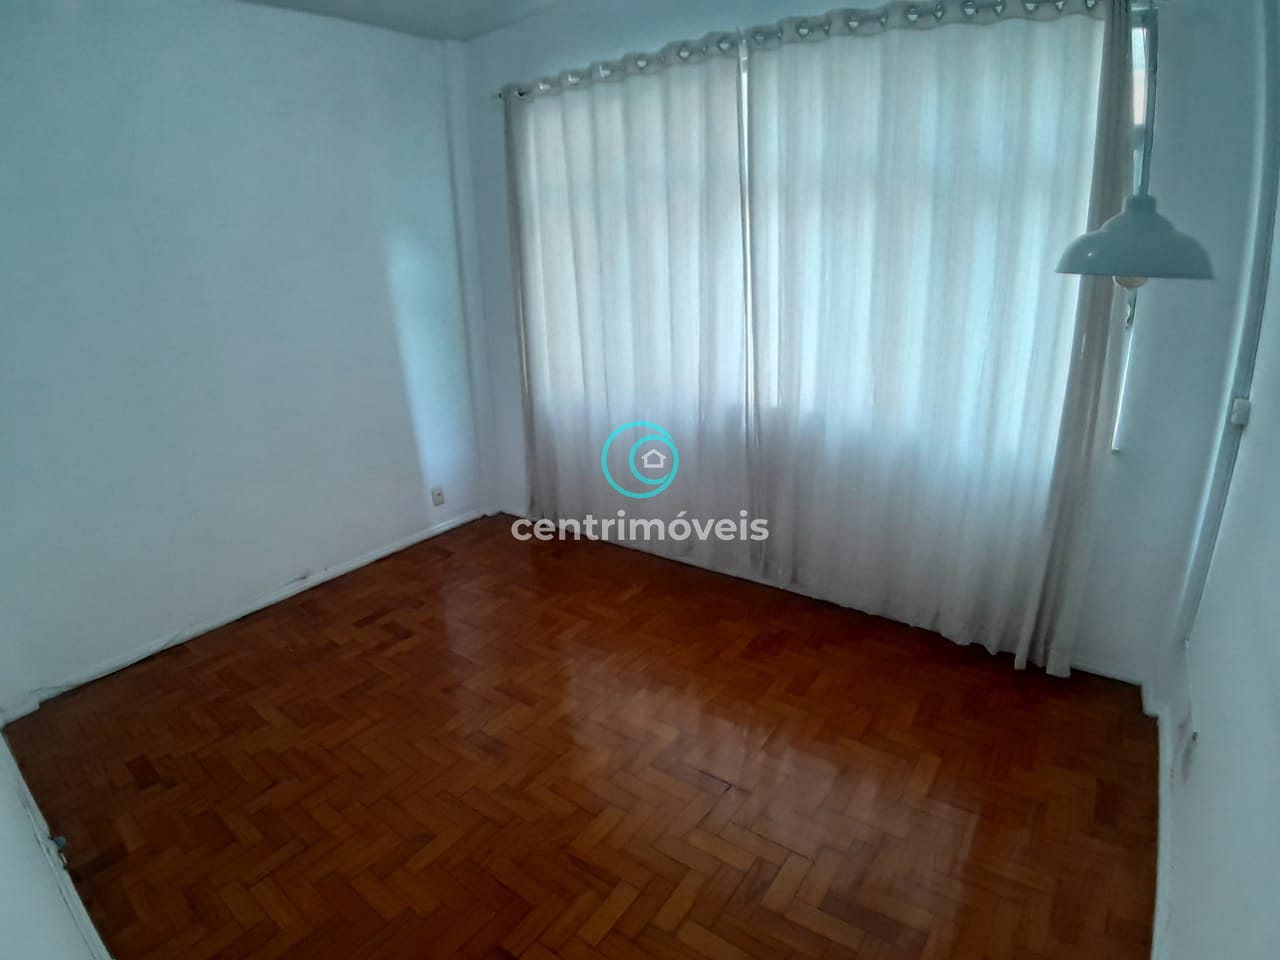 Apartamento em Maracanã, Rio de Janeiro/RJ de 60m² 1 quartos para locação R$ 1.550,00/mes